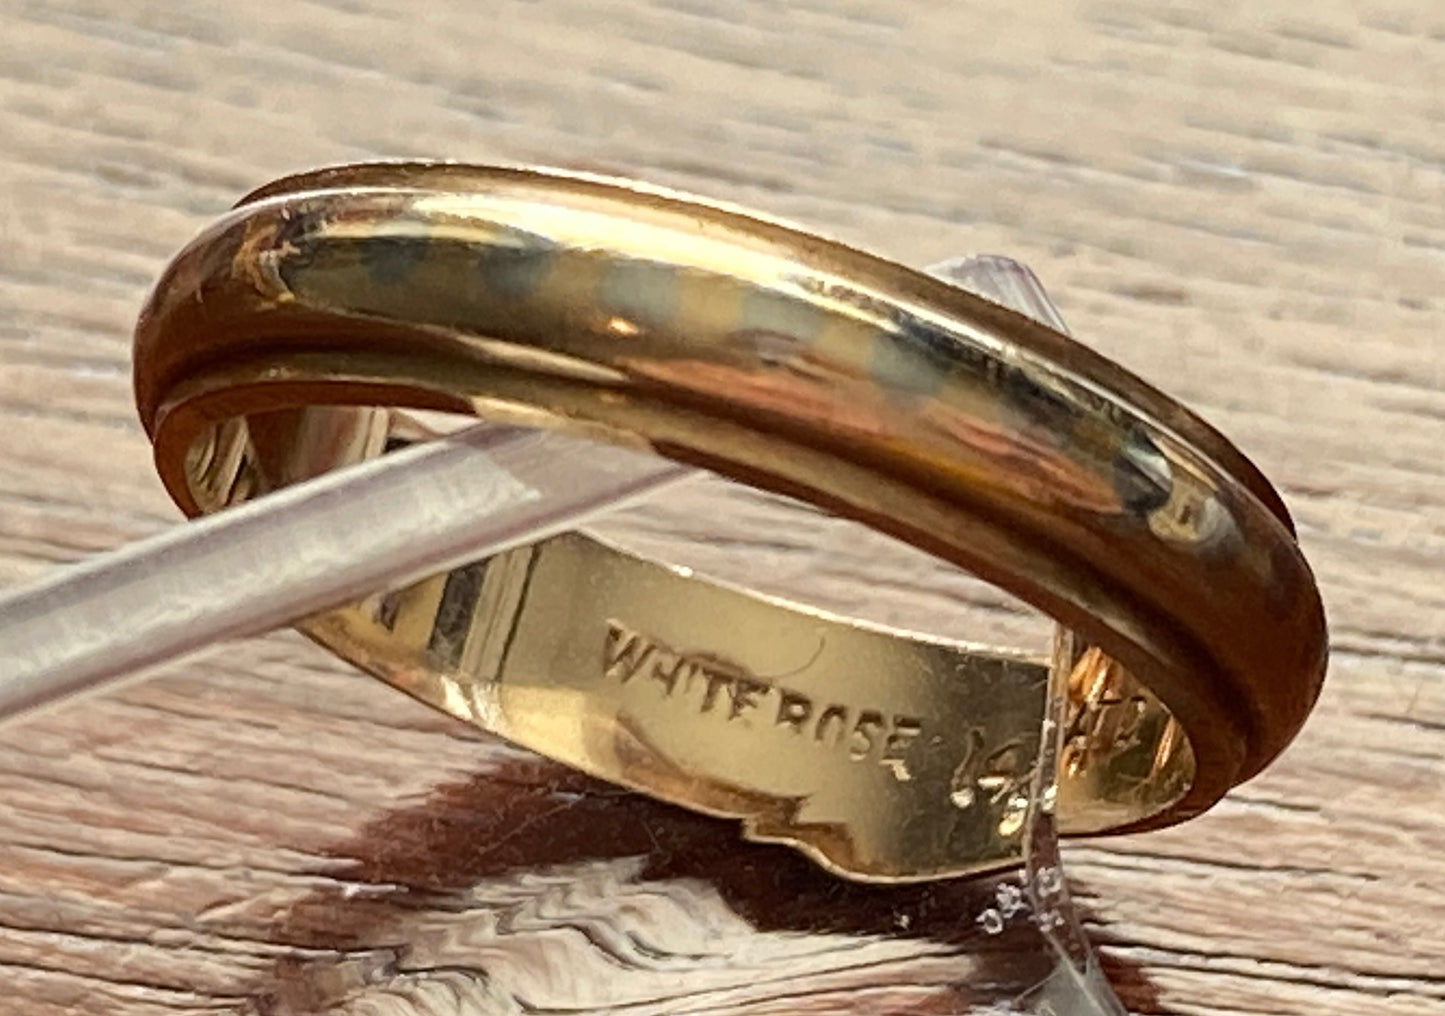 Vintage 14k Yellow Gold White Rose Wedding Band Ring Sz 5.25